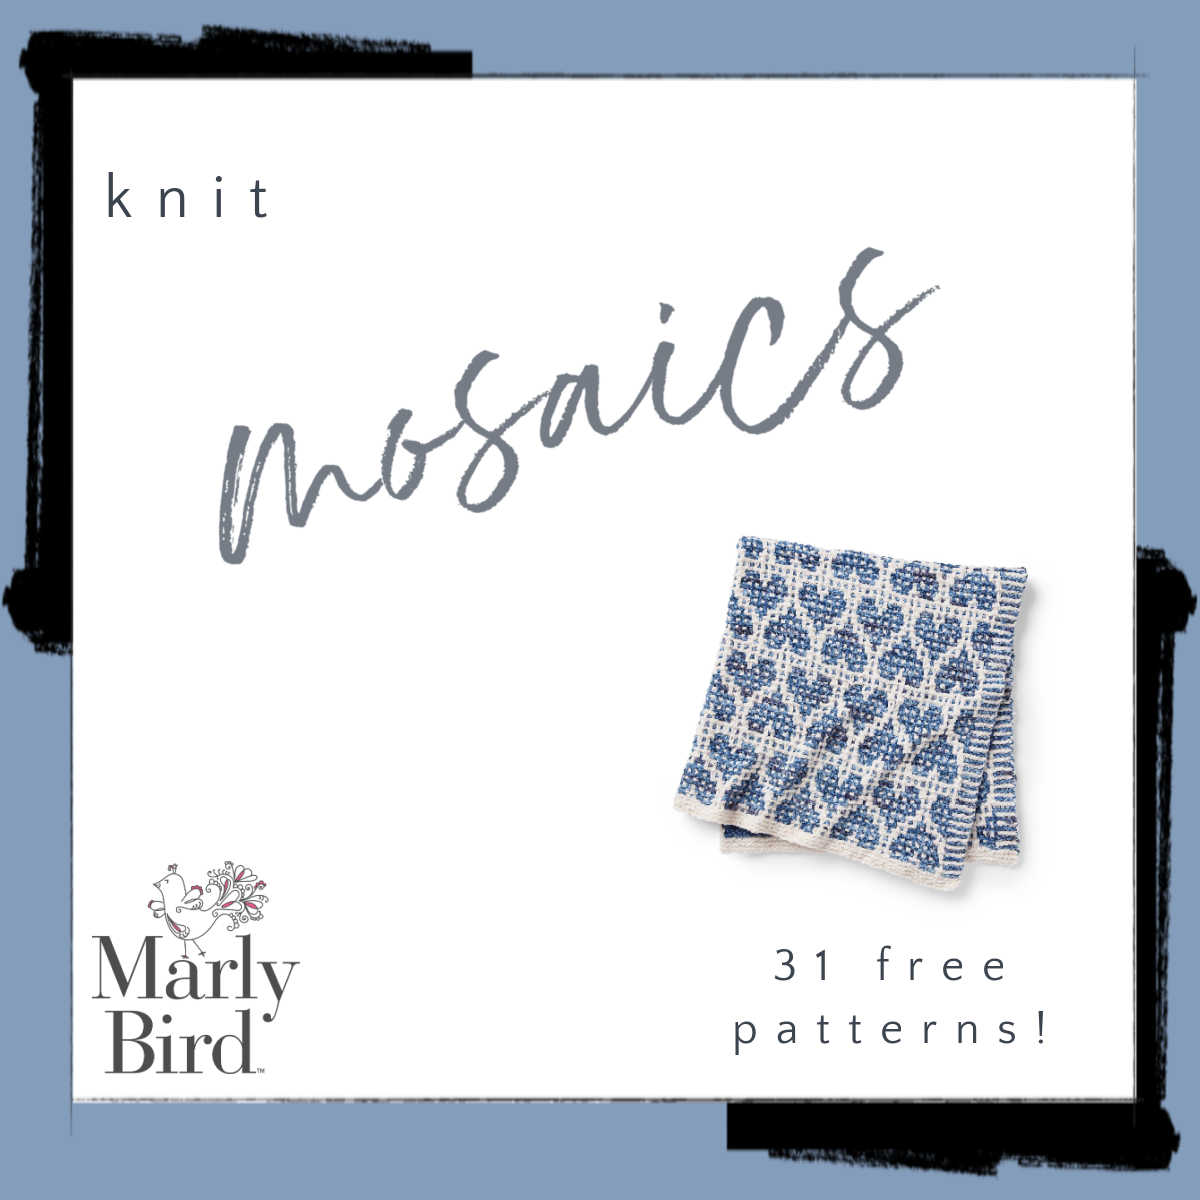 31 Free Mosaic Knitting Patterns